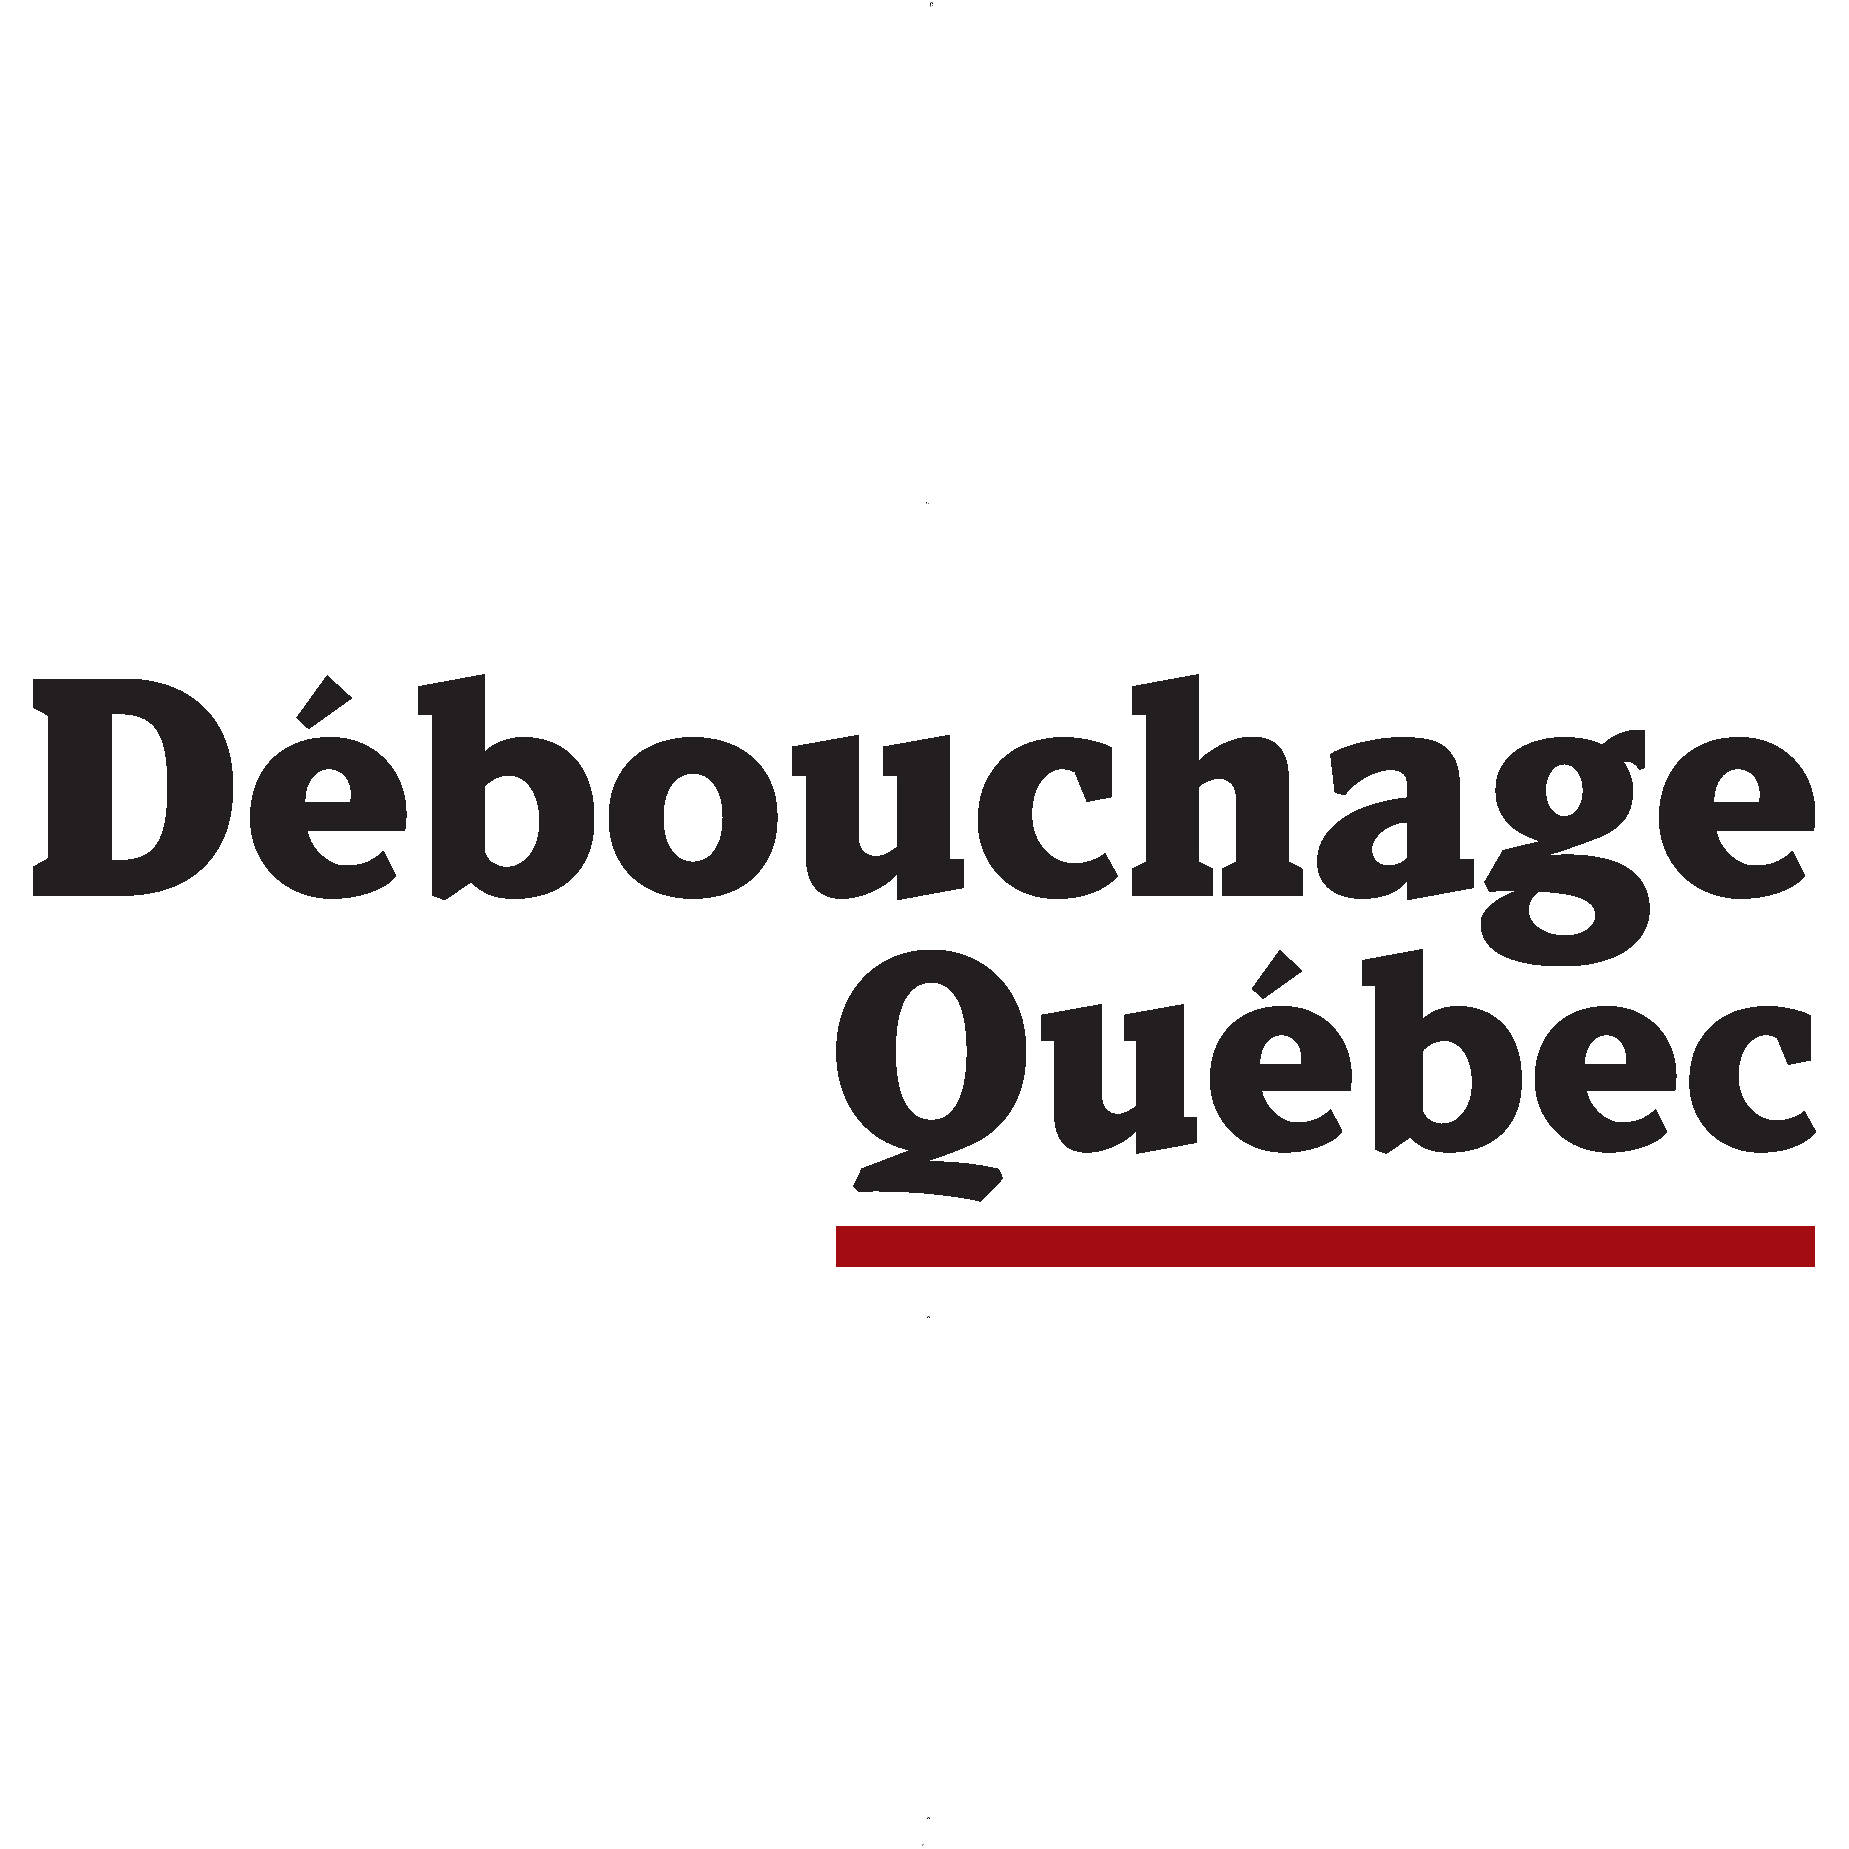 Débouchage Québec à Québec offre des produits et service dans la région de Capitale-Nationale tels que : Construction et notre répertoire des entreprises québécoises est fier de présenter Débouchage Québec à Québec en Capitale-Nationale.